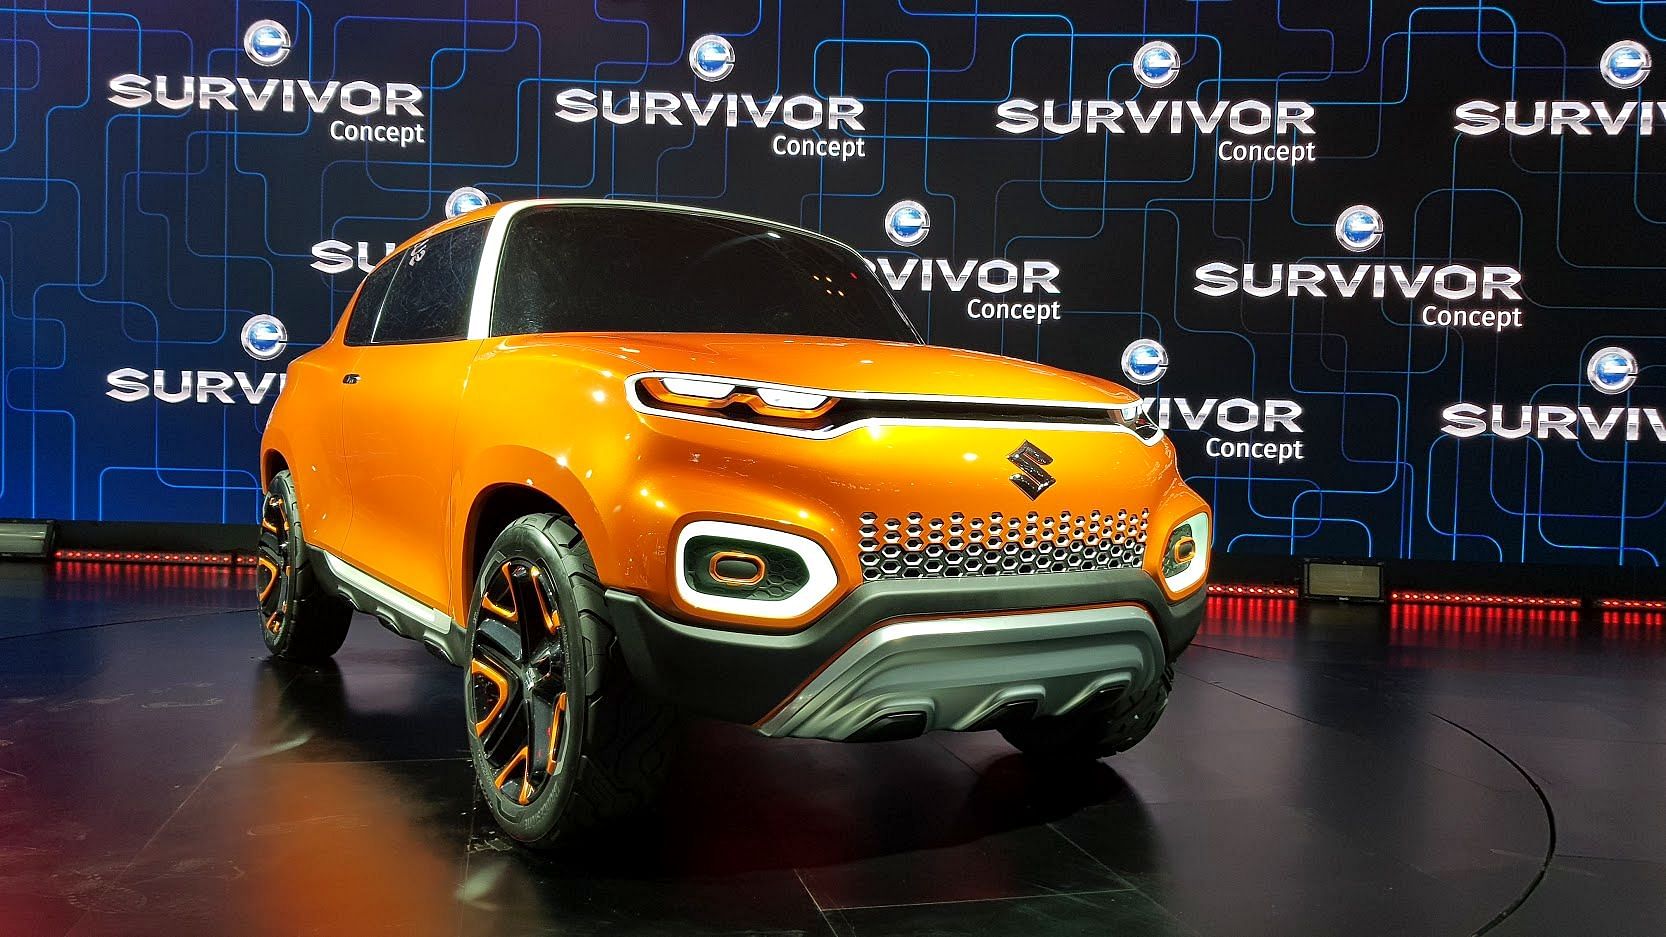 The Maruti Suzuki S-Presso is based on the Future-S concept showcased at Auto Expo 2018.&nbsp;